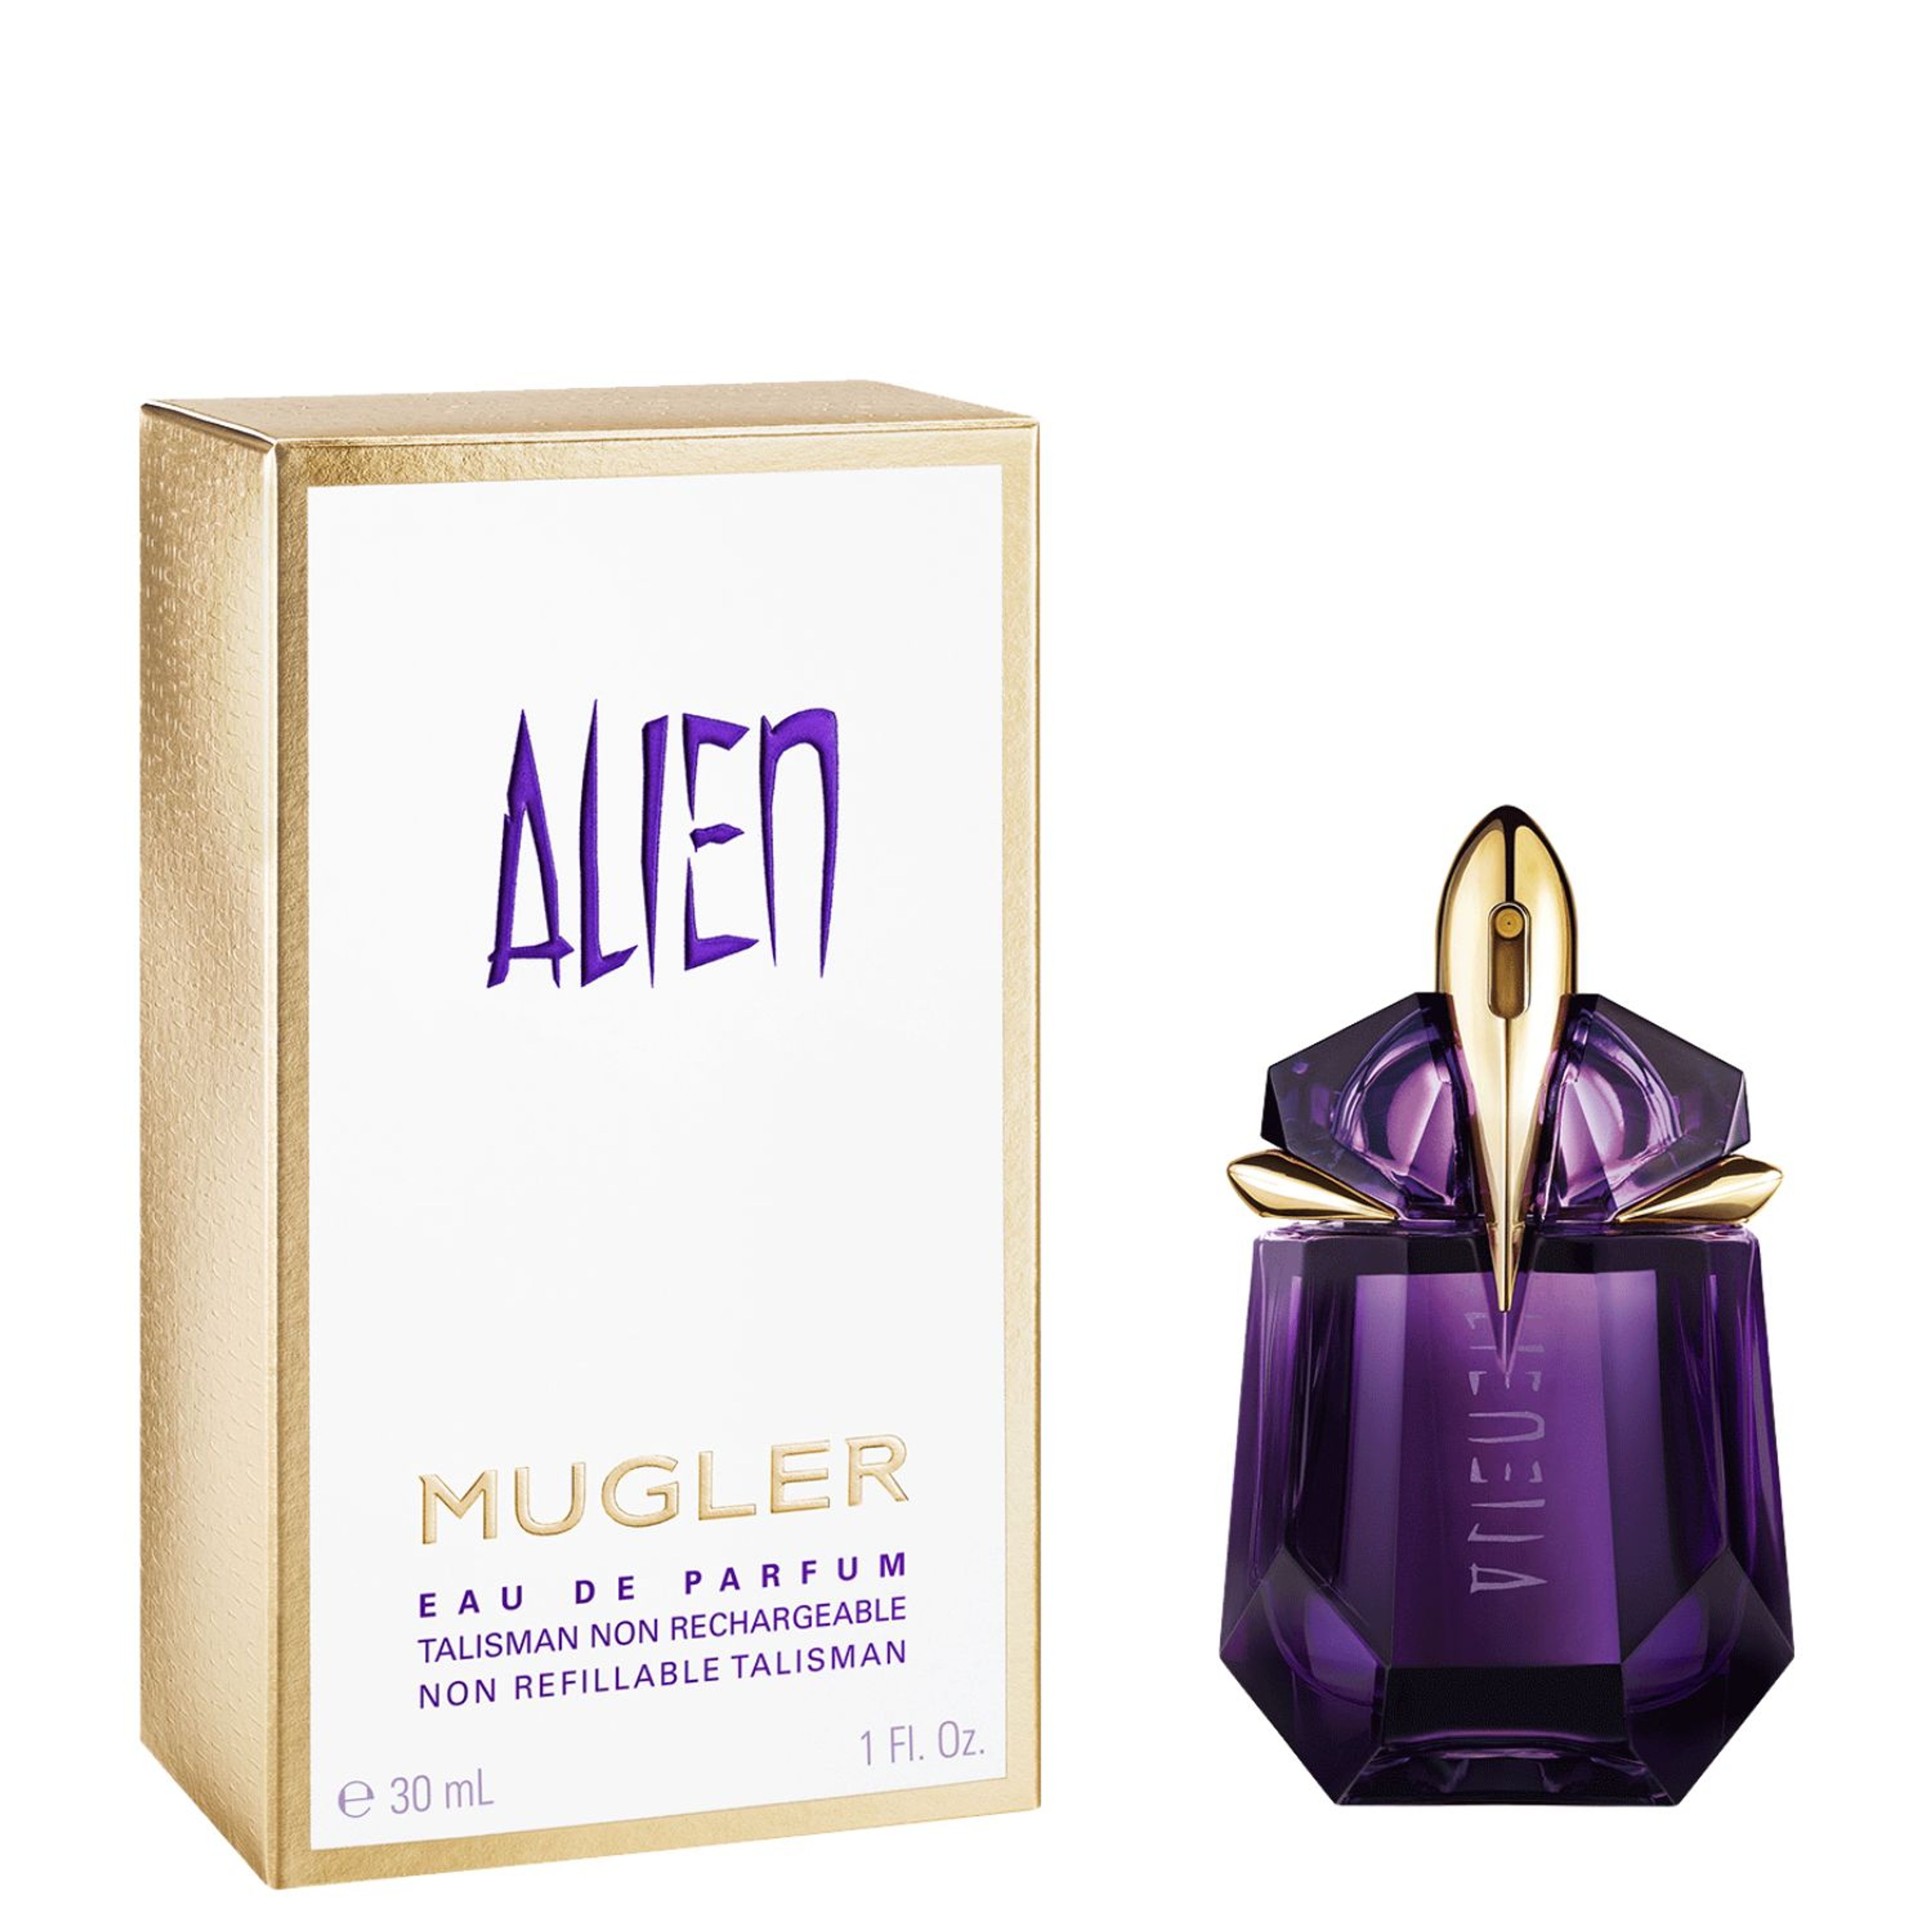 Mugler Alien Eau De Parfum Ricaricabile Pour Femme 2